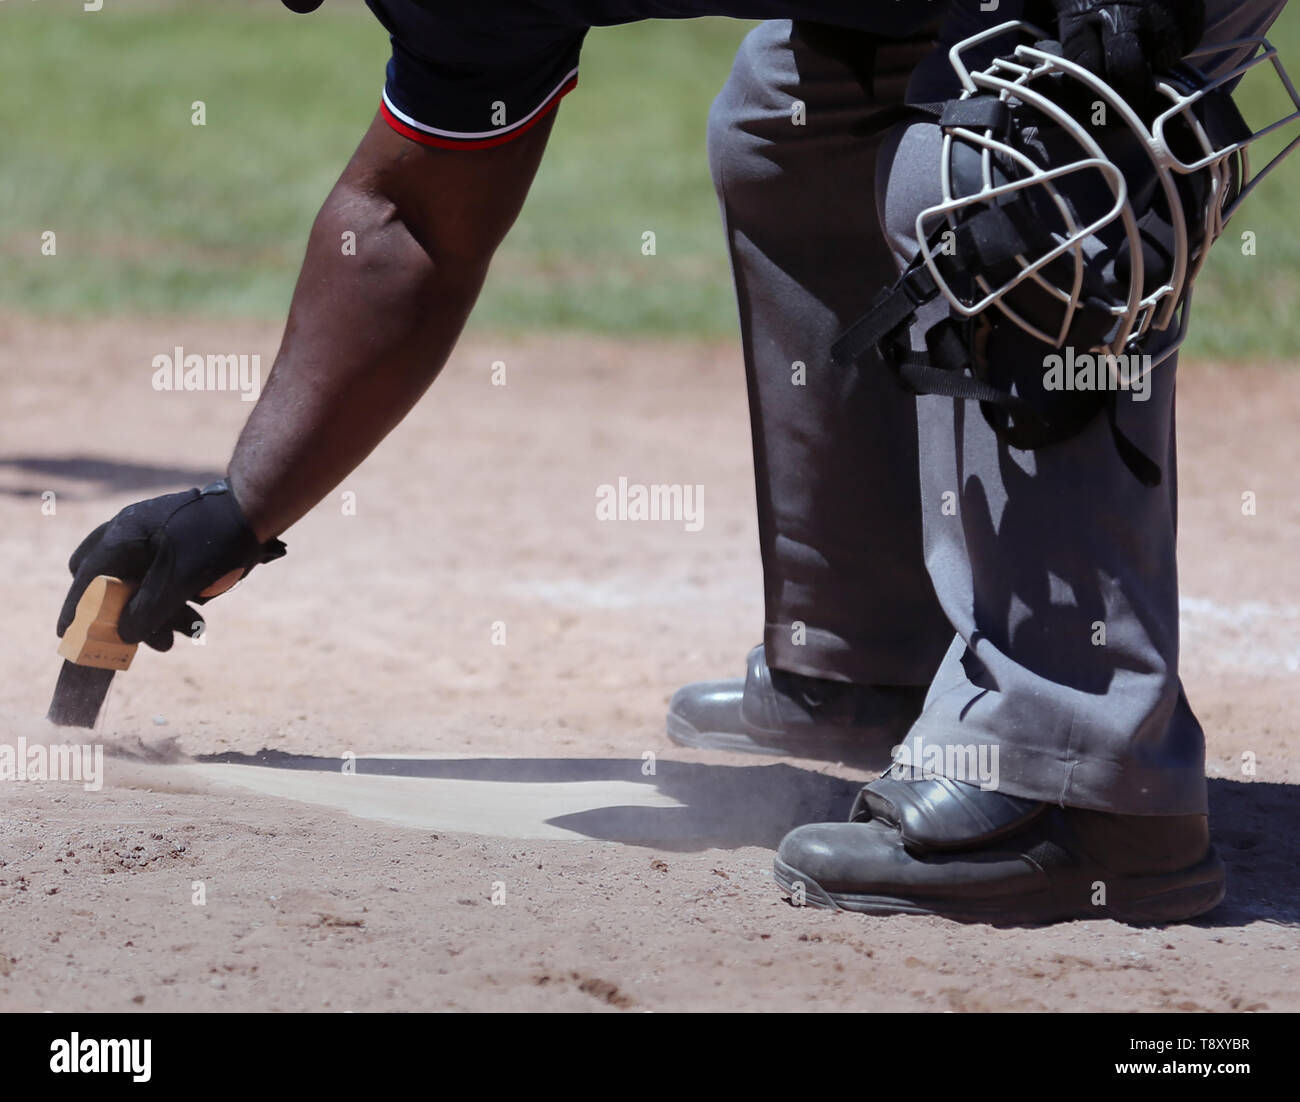 African American juge-arbitre plaque accueil nettoyage dans une école secondaire d'un match de baseball Banque D'Images